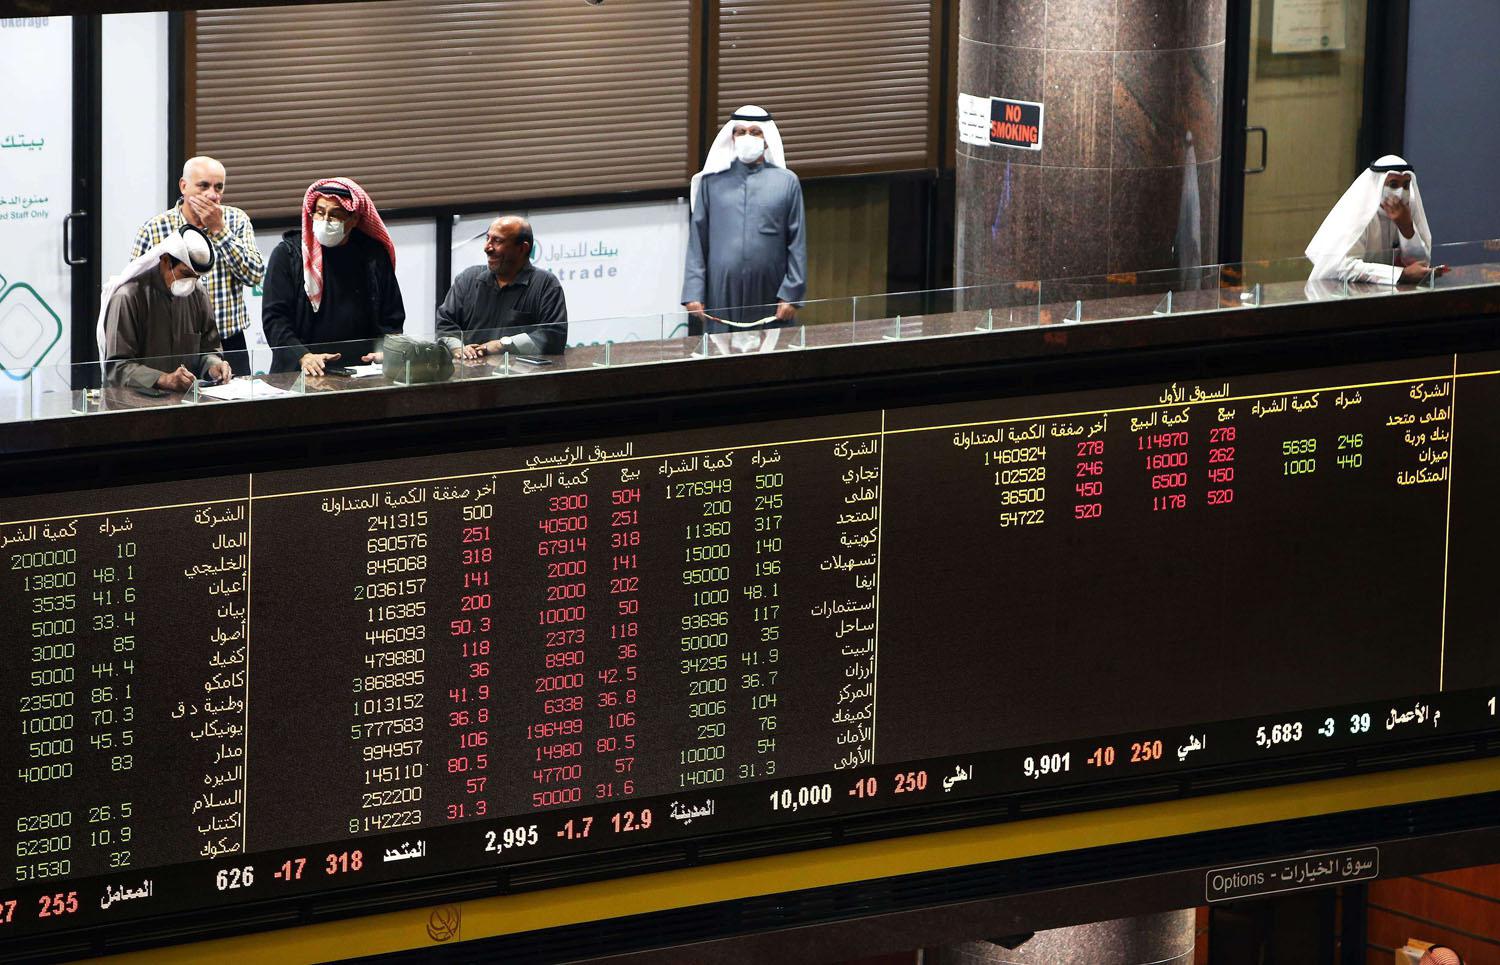 الاقتصاد الكويتي يحاصر أزمة كورونا عبر الاستعانة بصندوق الثروة السيادي 